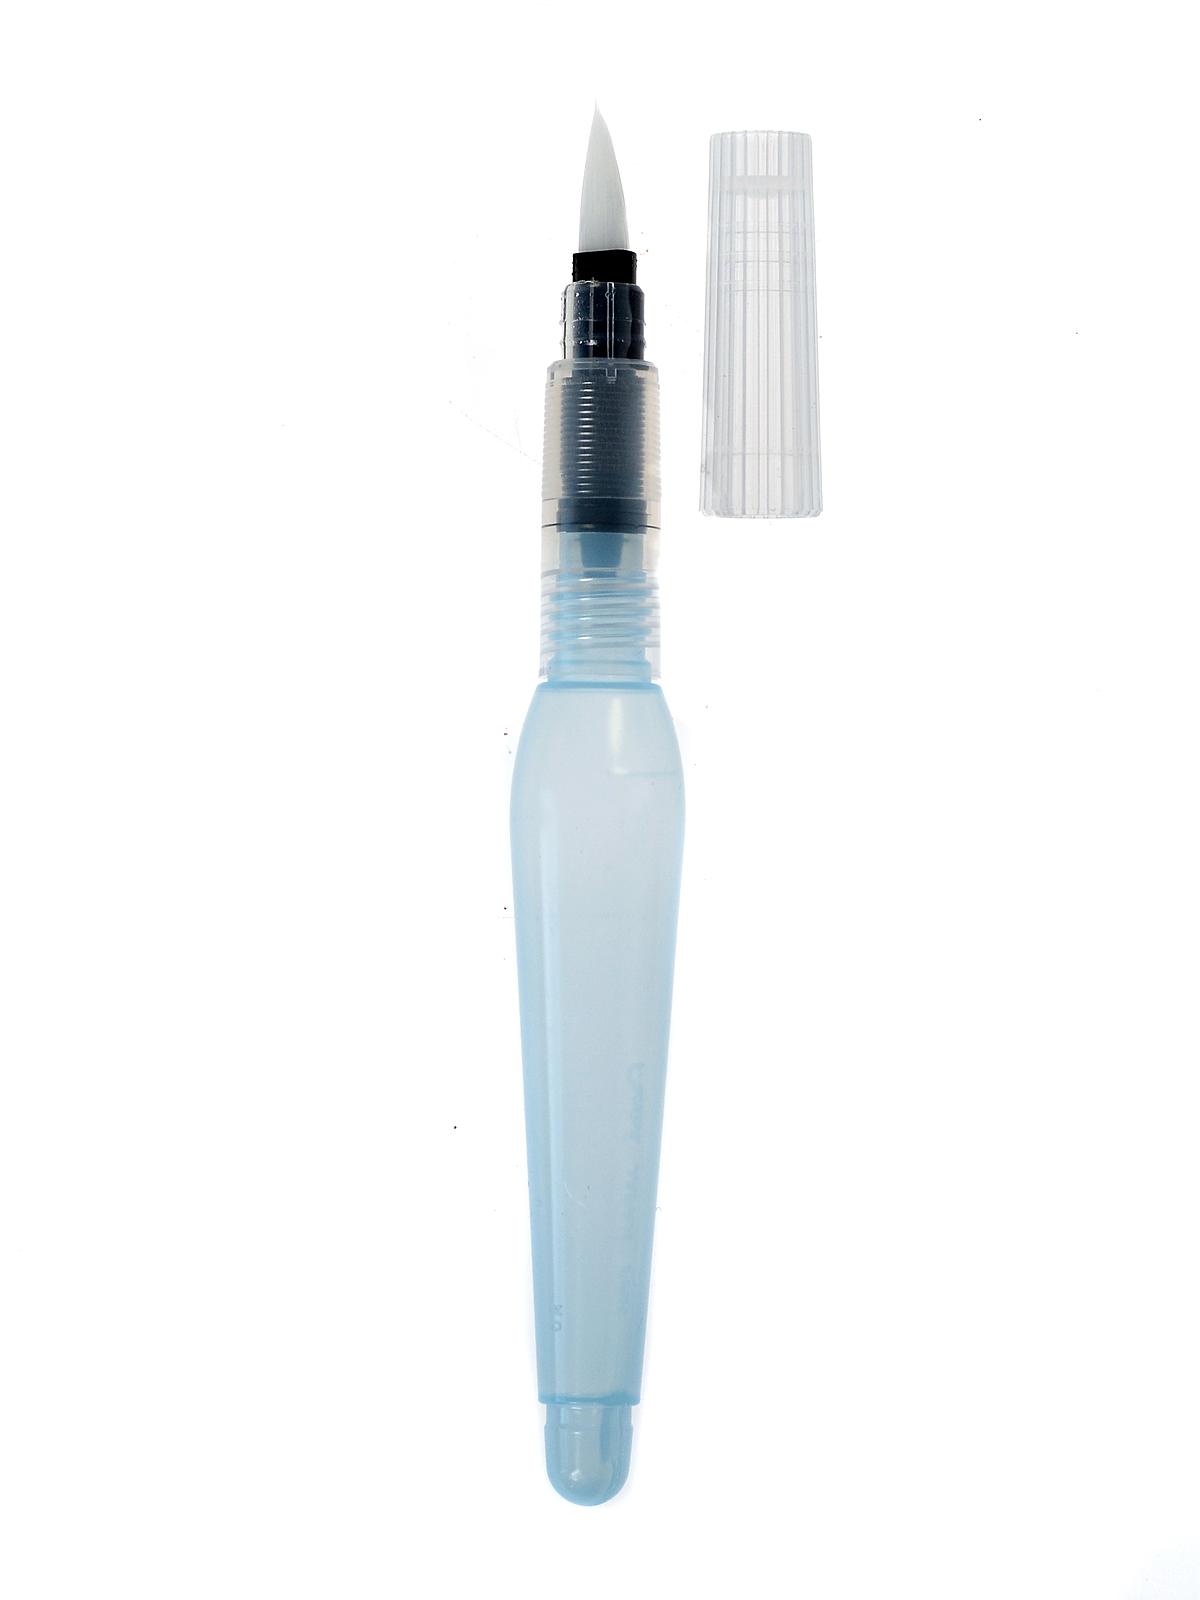 Pentel Aquash Water Brush, Set Of 4 Assorted Tips